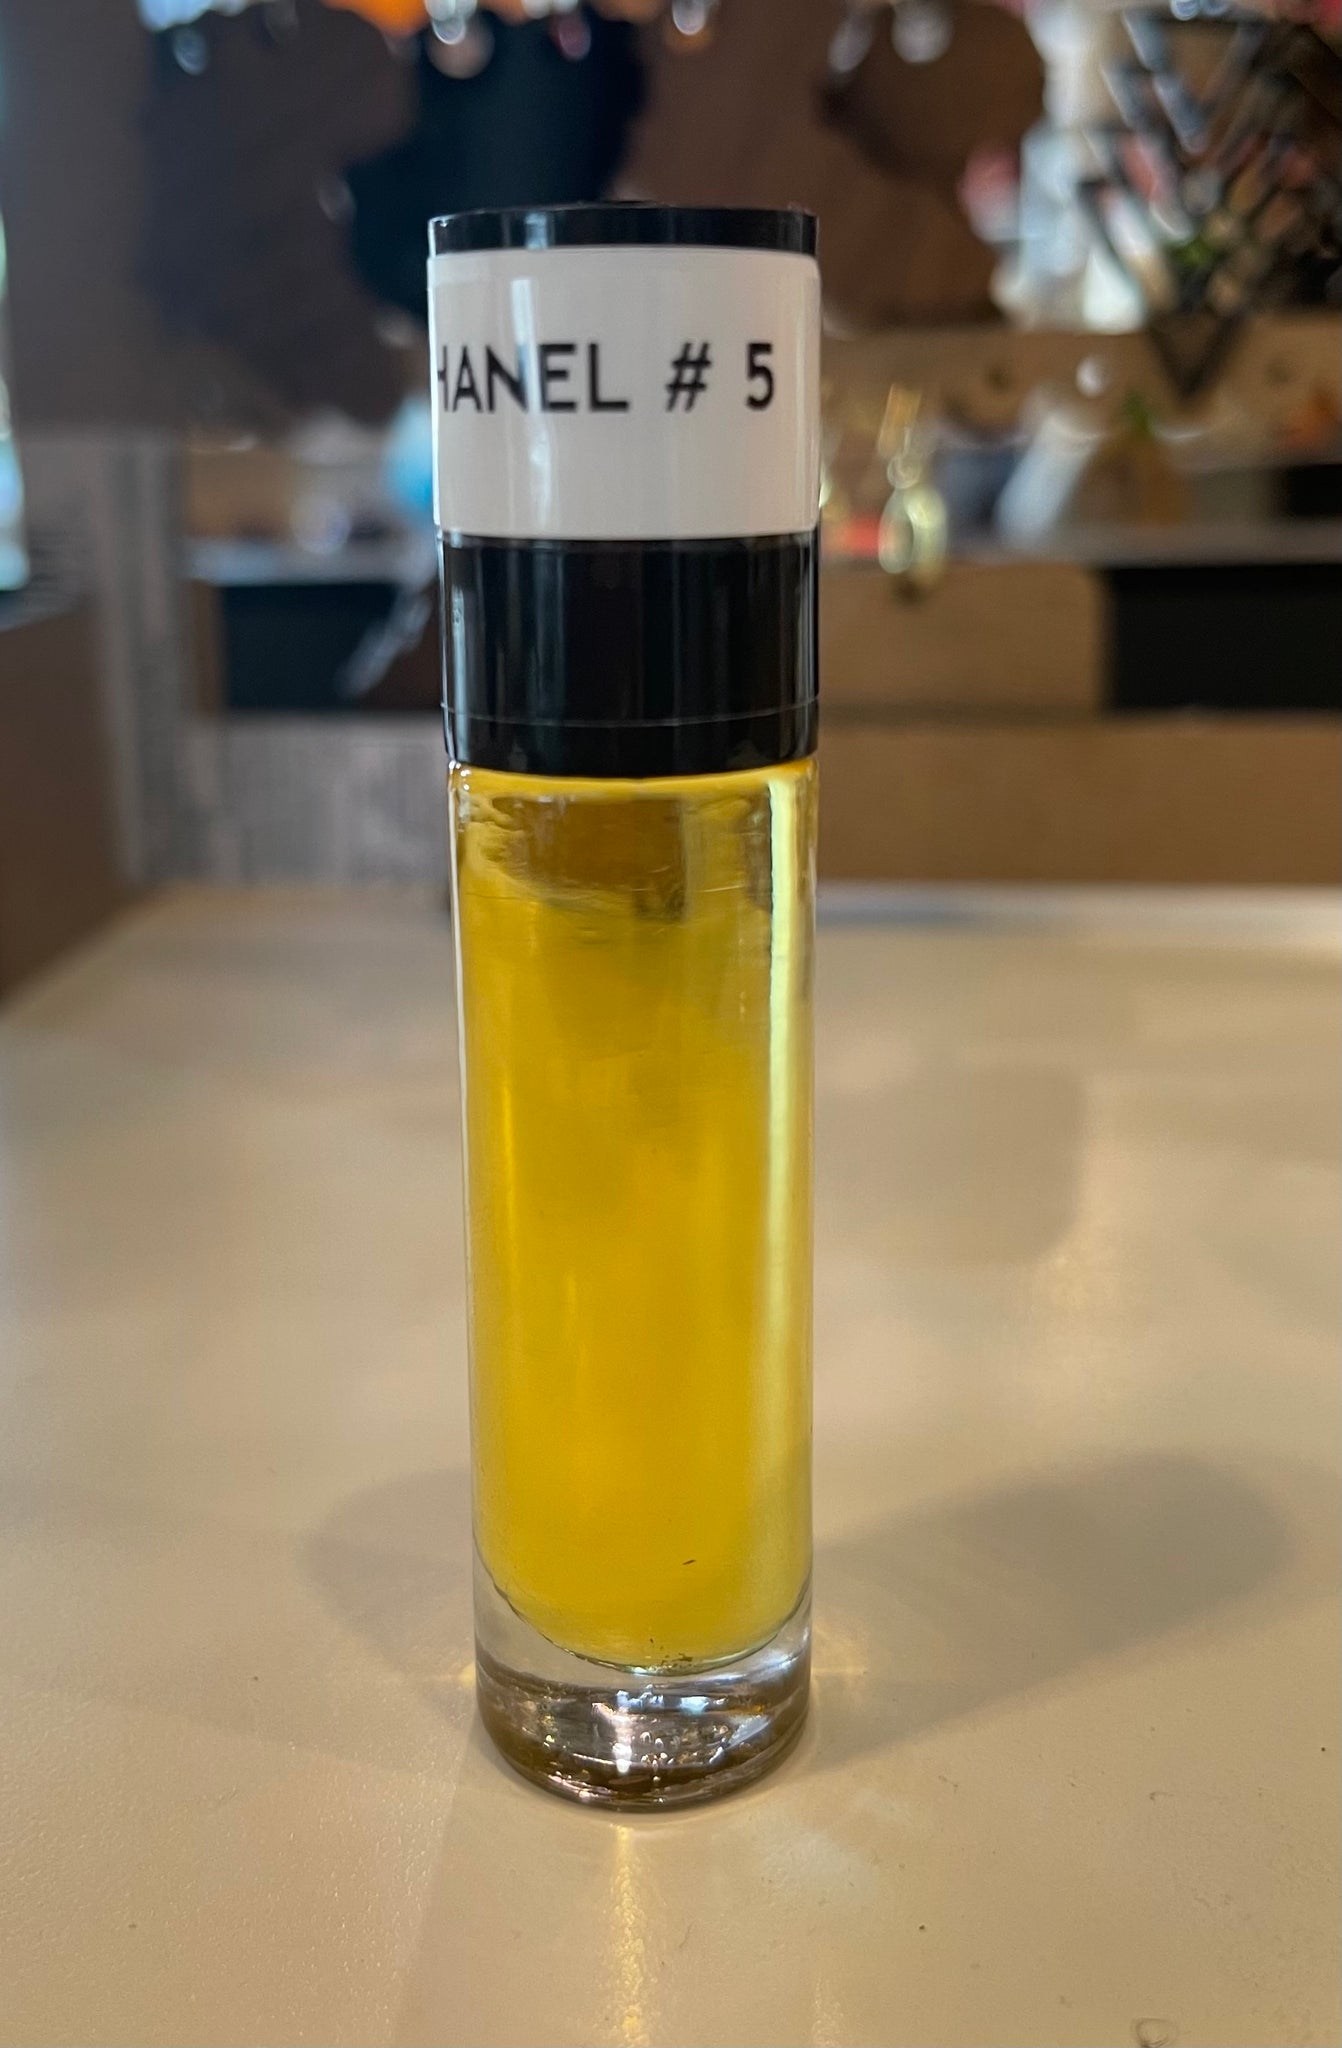 chanel no 5 oil perfume